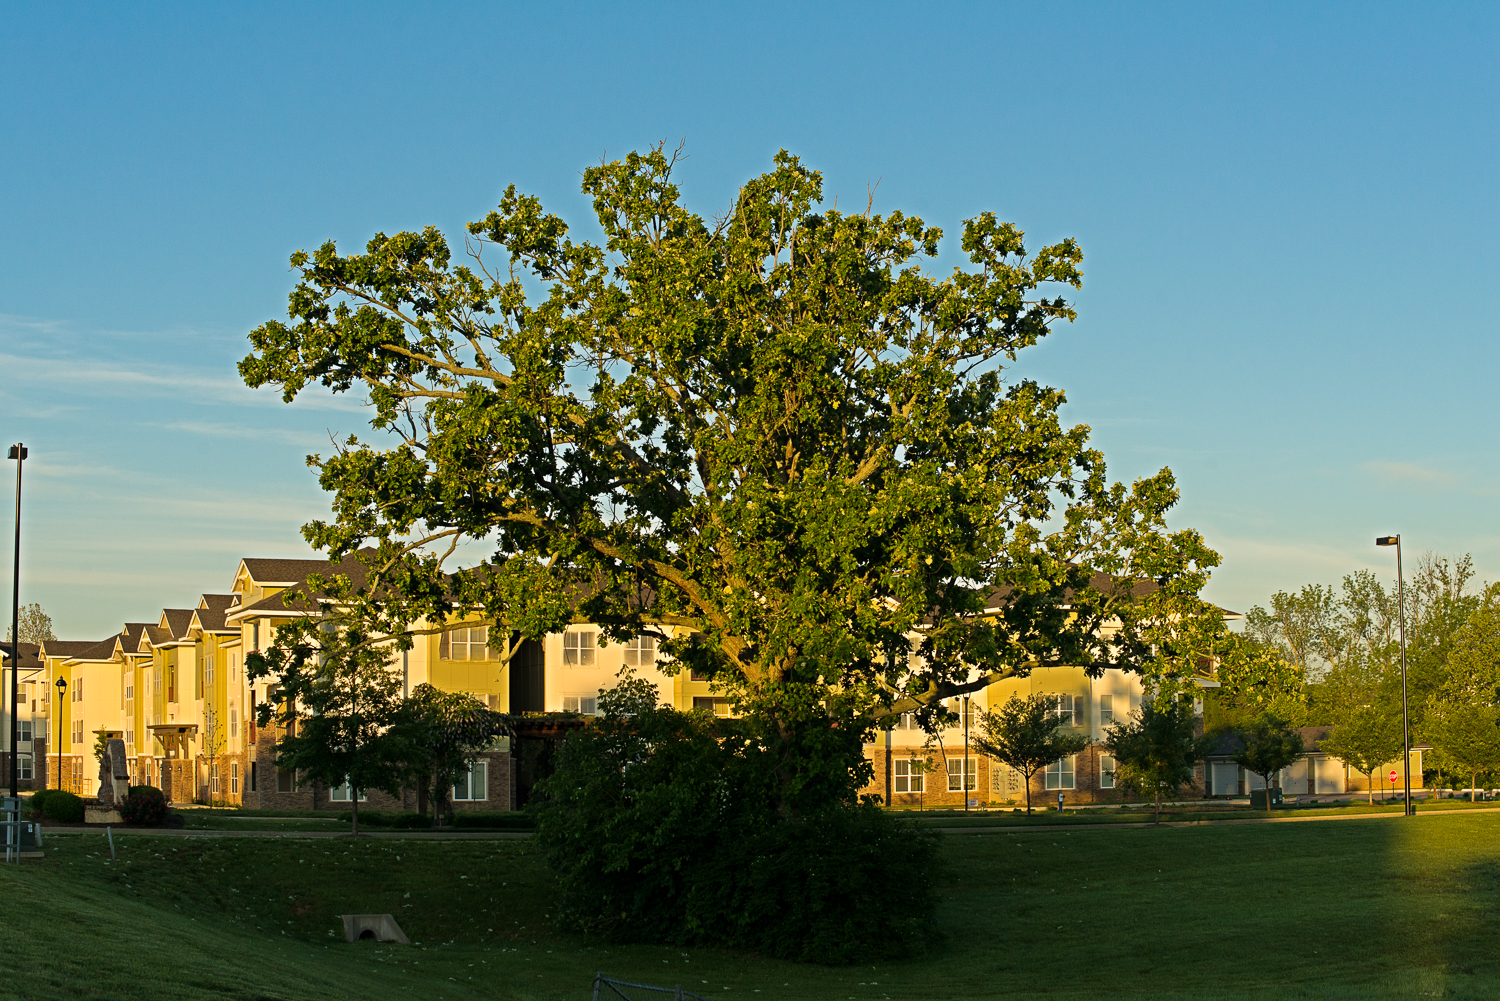 Bur oak